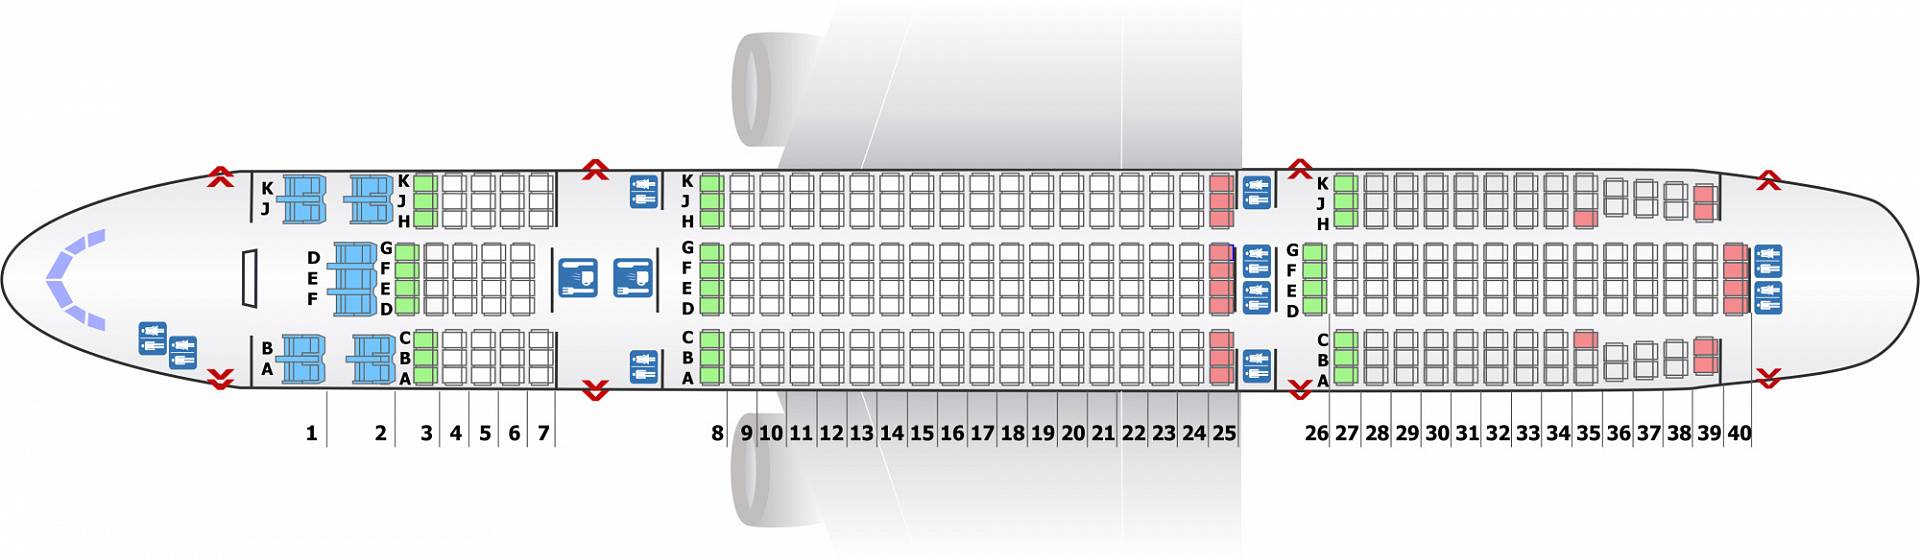 Боинг 777 -200er схема посадочных мест